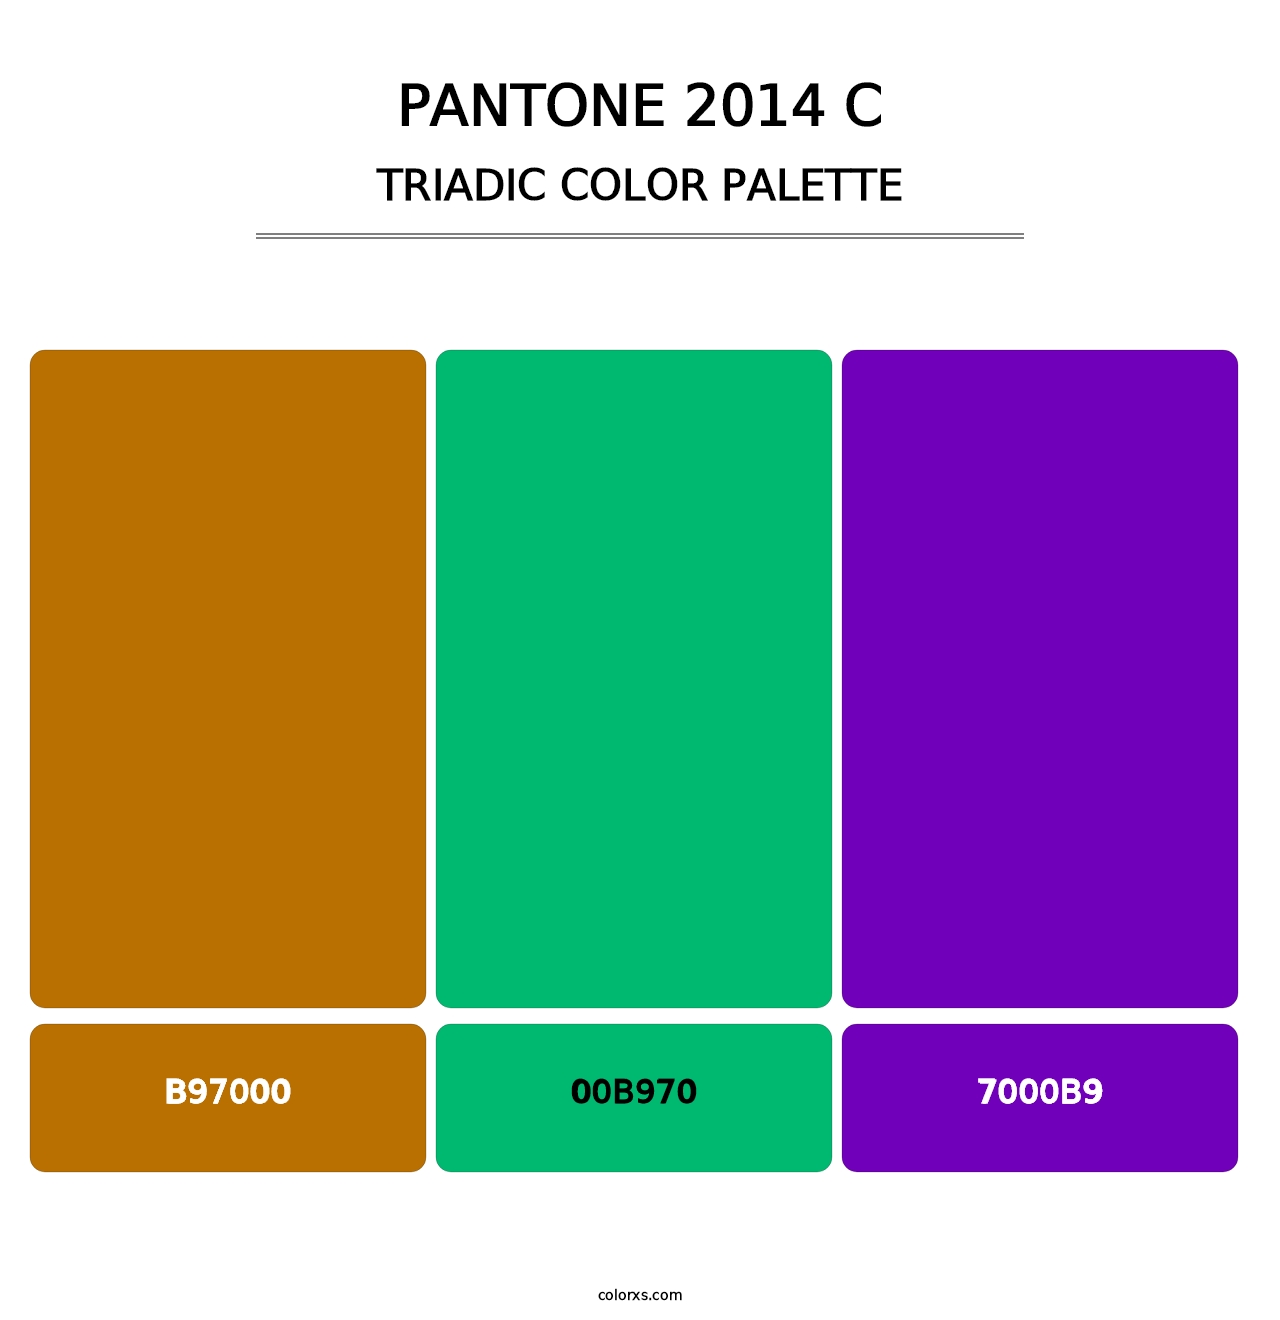 PANTONE 2014 C - Triadic Color Palette